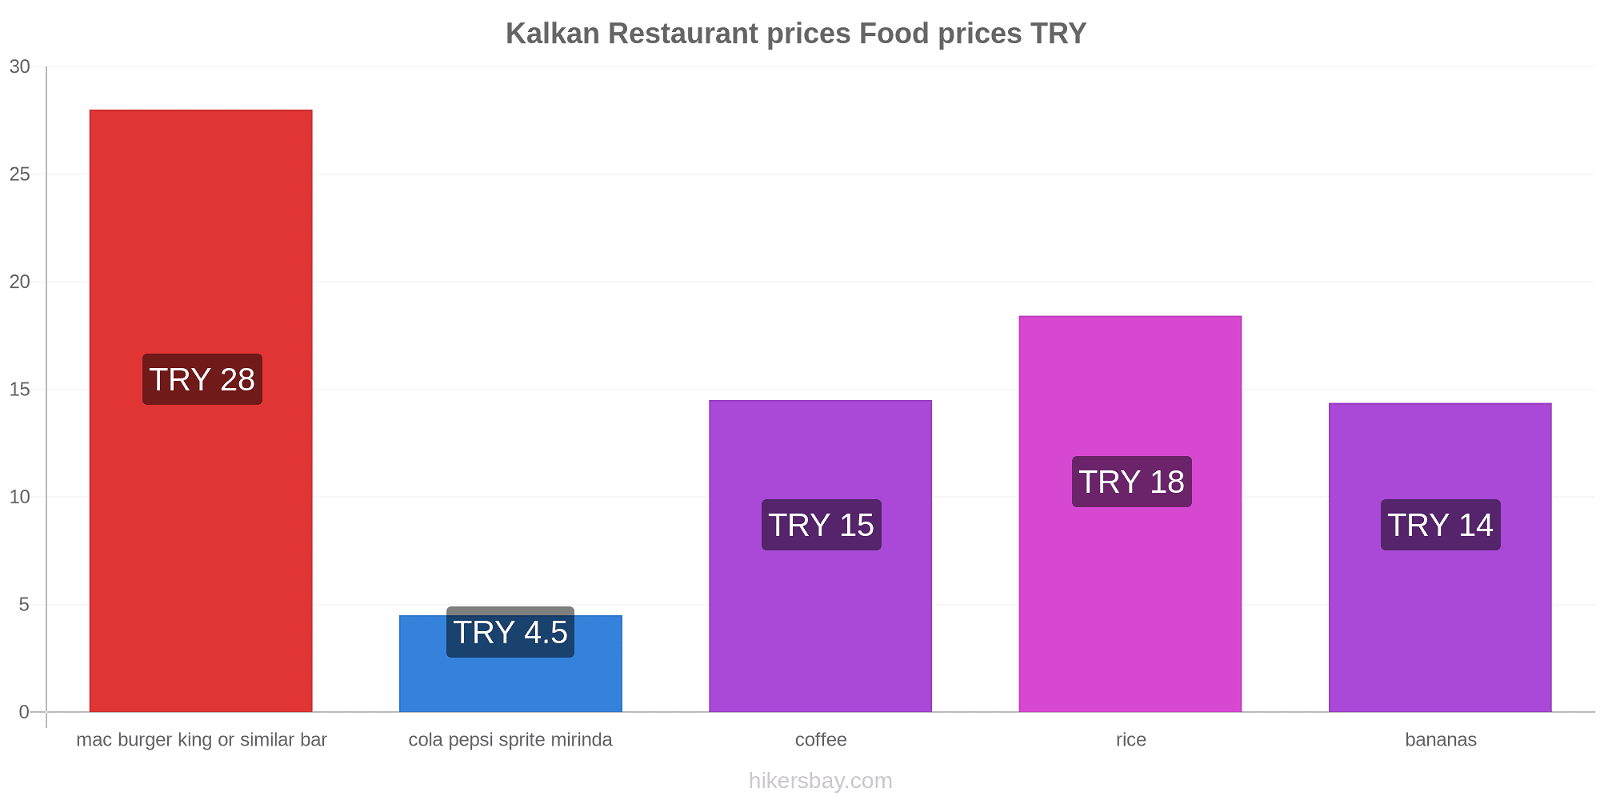 Kalkan price changes hikersbay.com